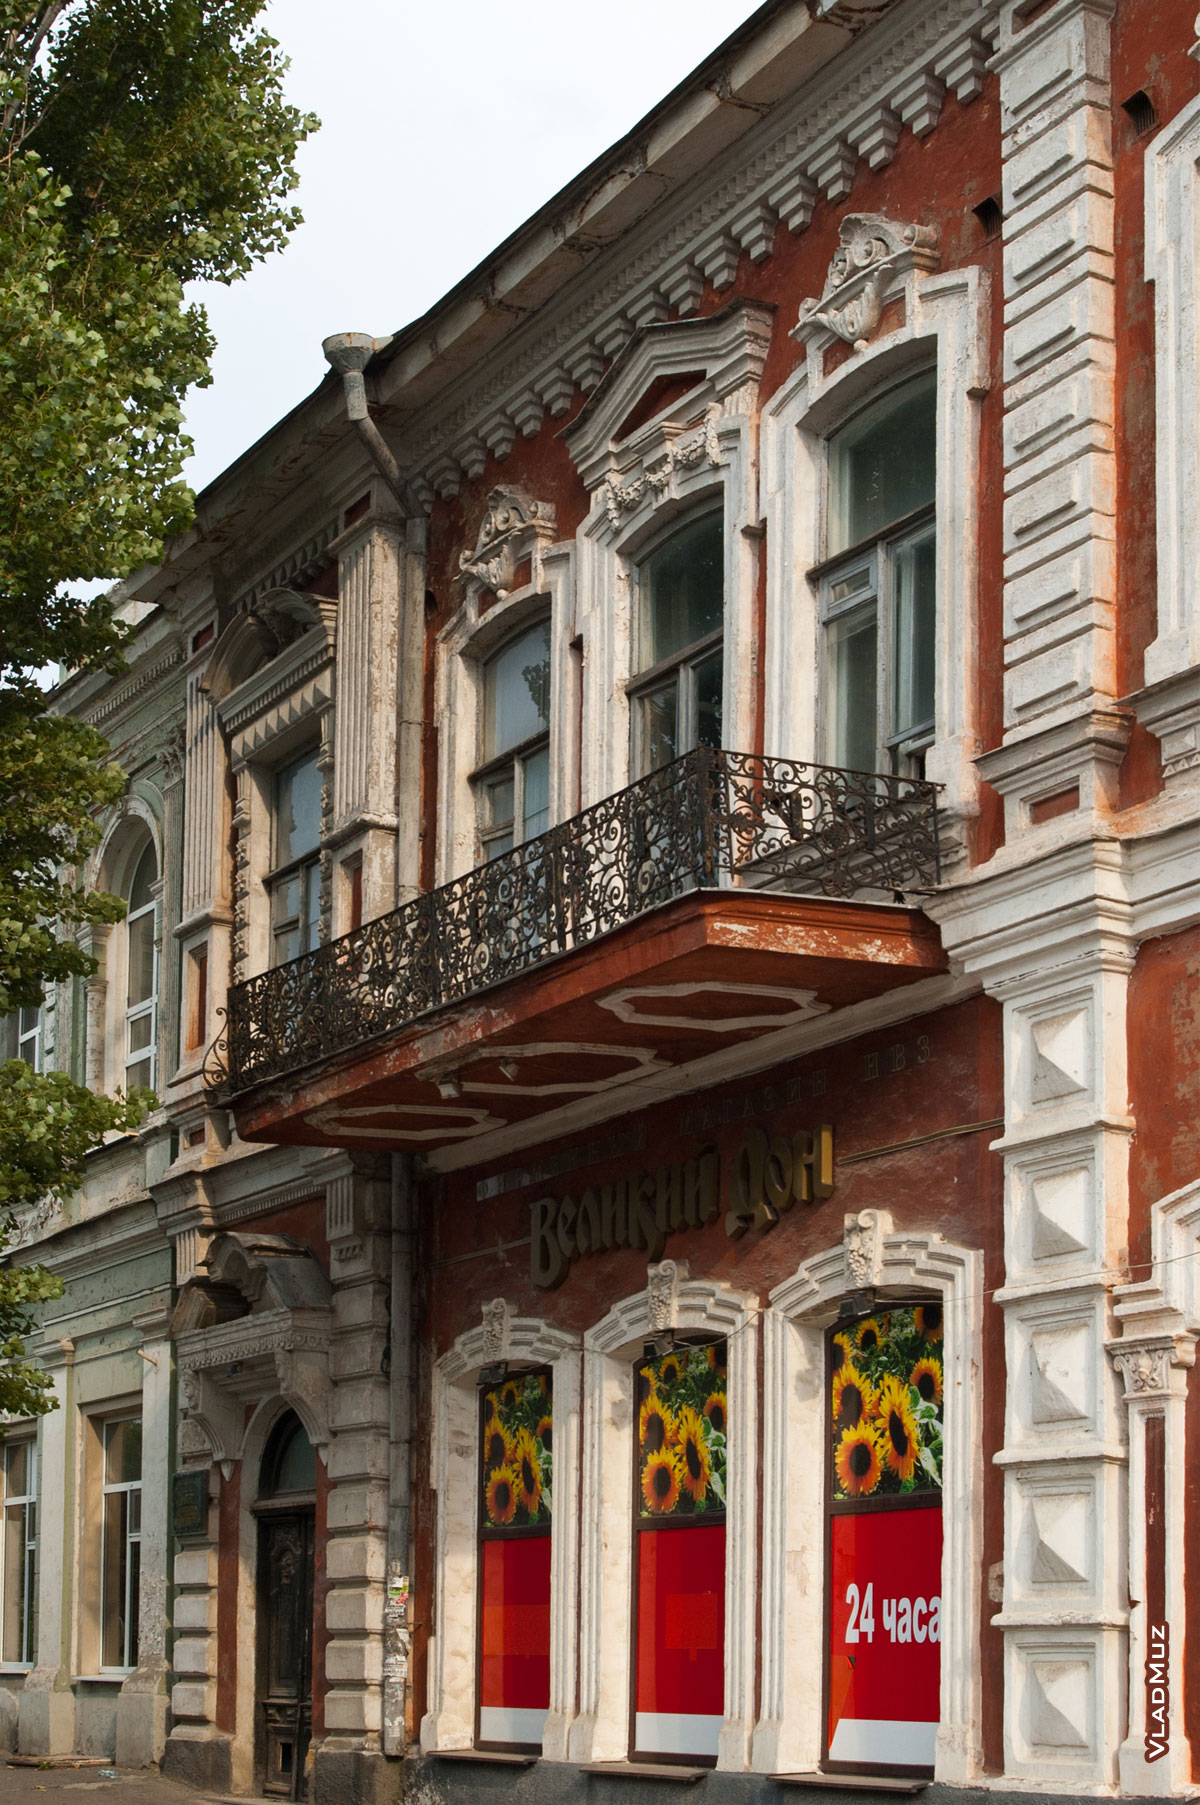 Фото 2-х этажного дома с кованым ограждением на балконе в Новочеркасске